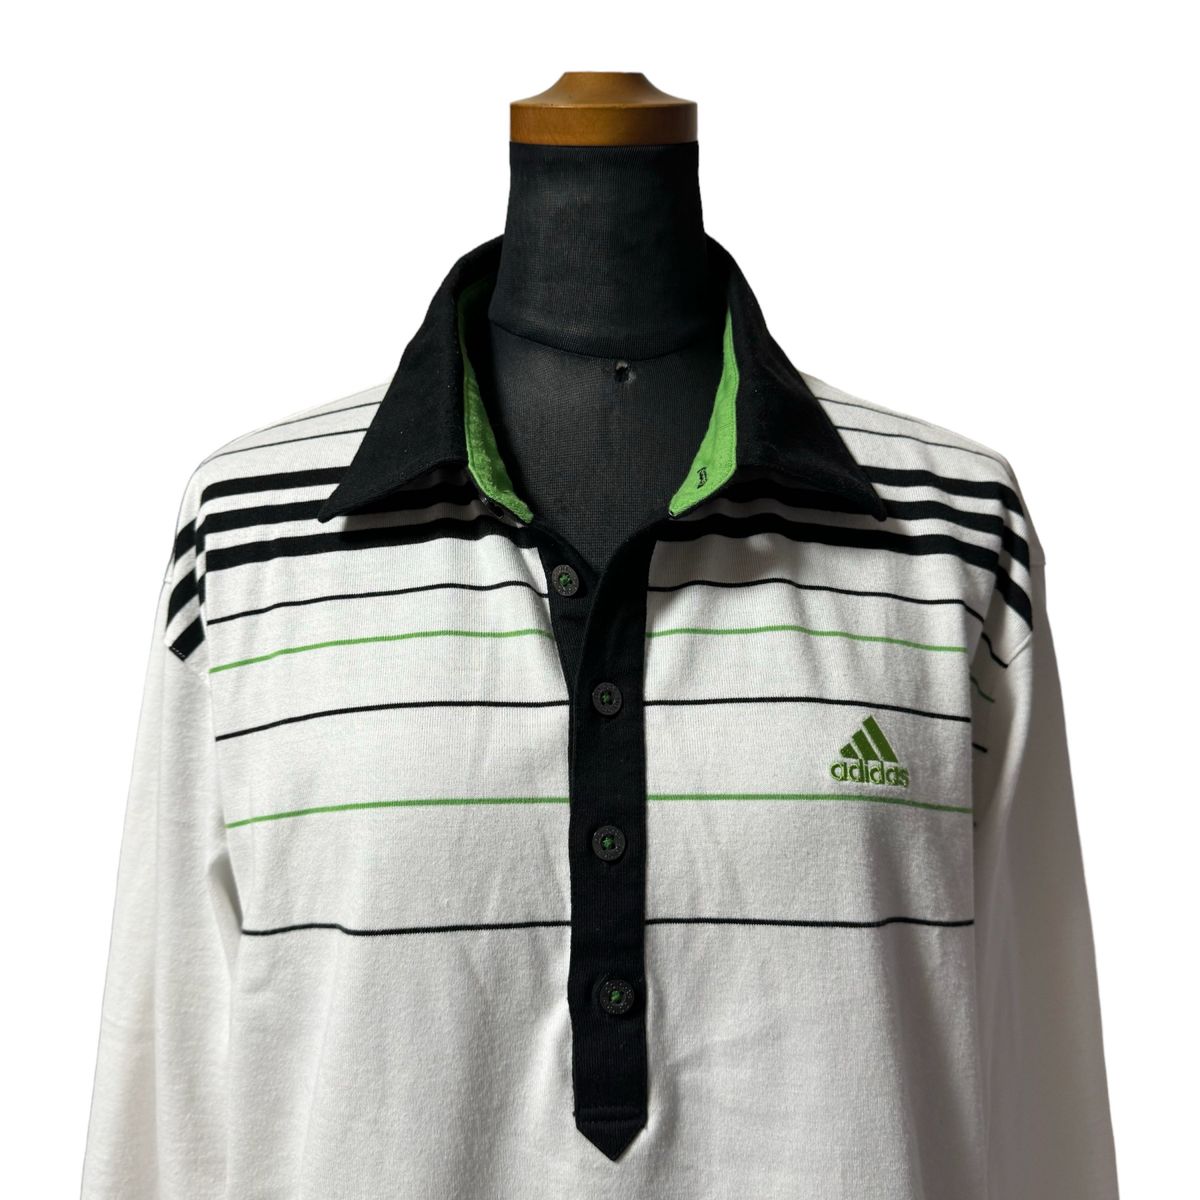 【春物】adidas アディダス ゴルフシャツ ポロシャツ メンズ サイズL ホワイト ボーダー柄 ワンポイントロゴ ゴルフウェア